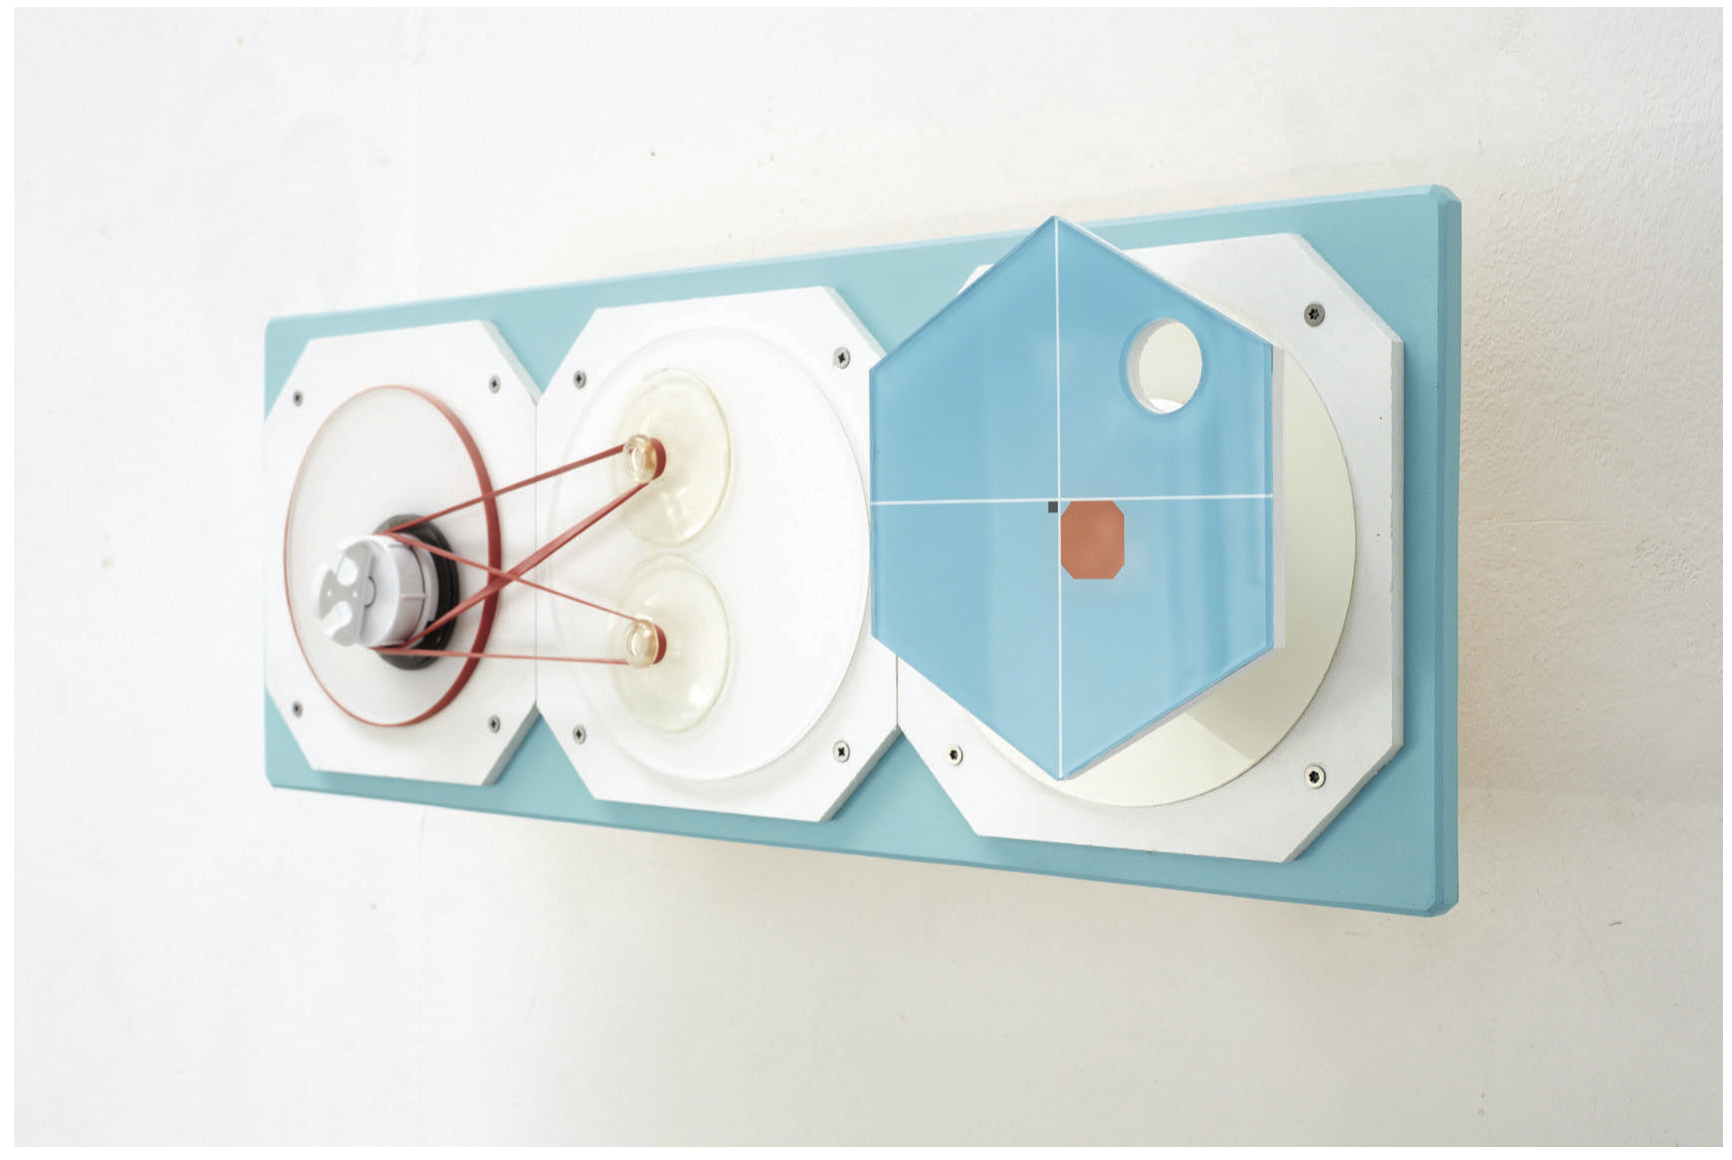 2014 adam kokesch untitled rétegelt lemez plexi akril műanyag gumi vákuumkorong 18 x 50 x 18 cm 1